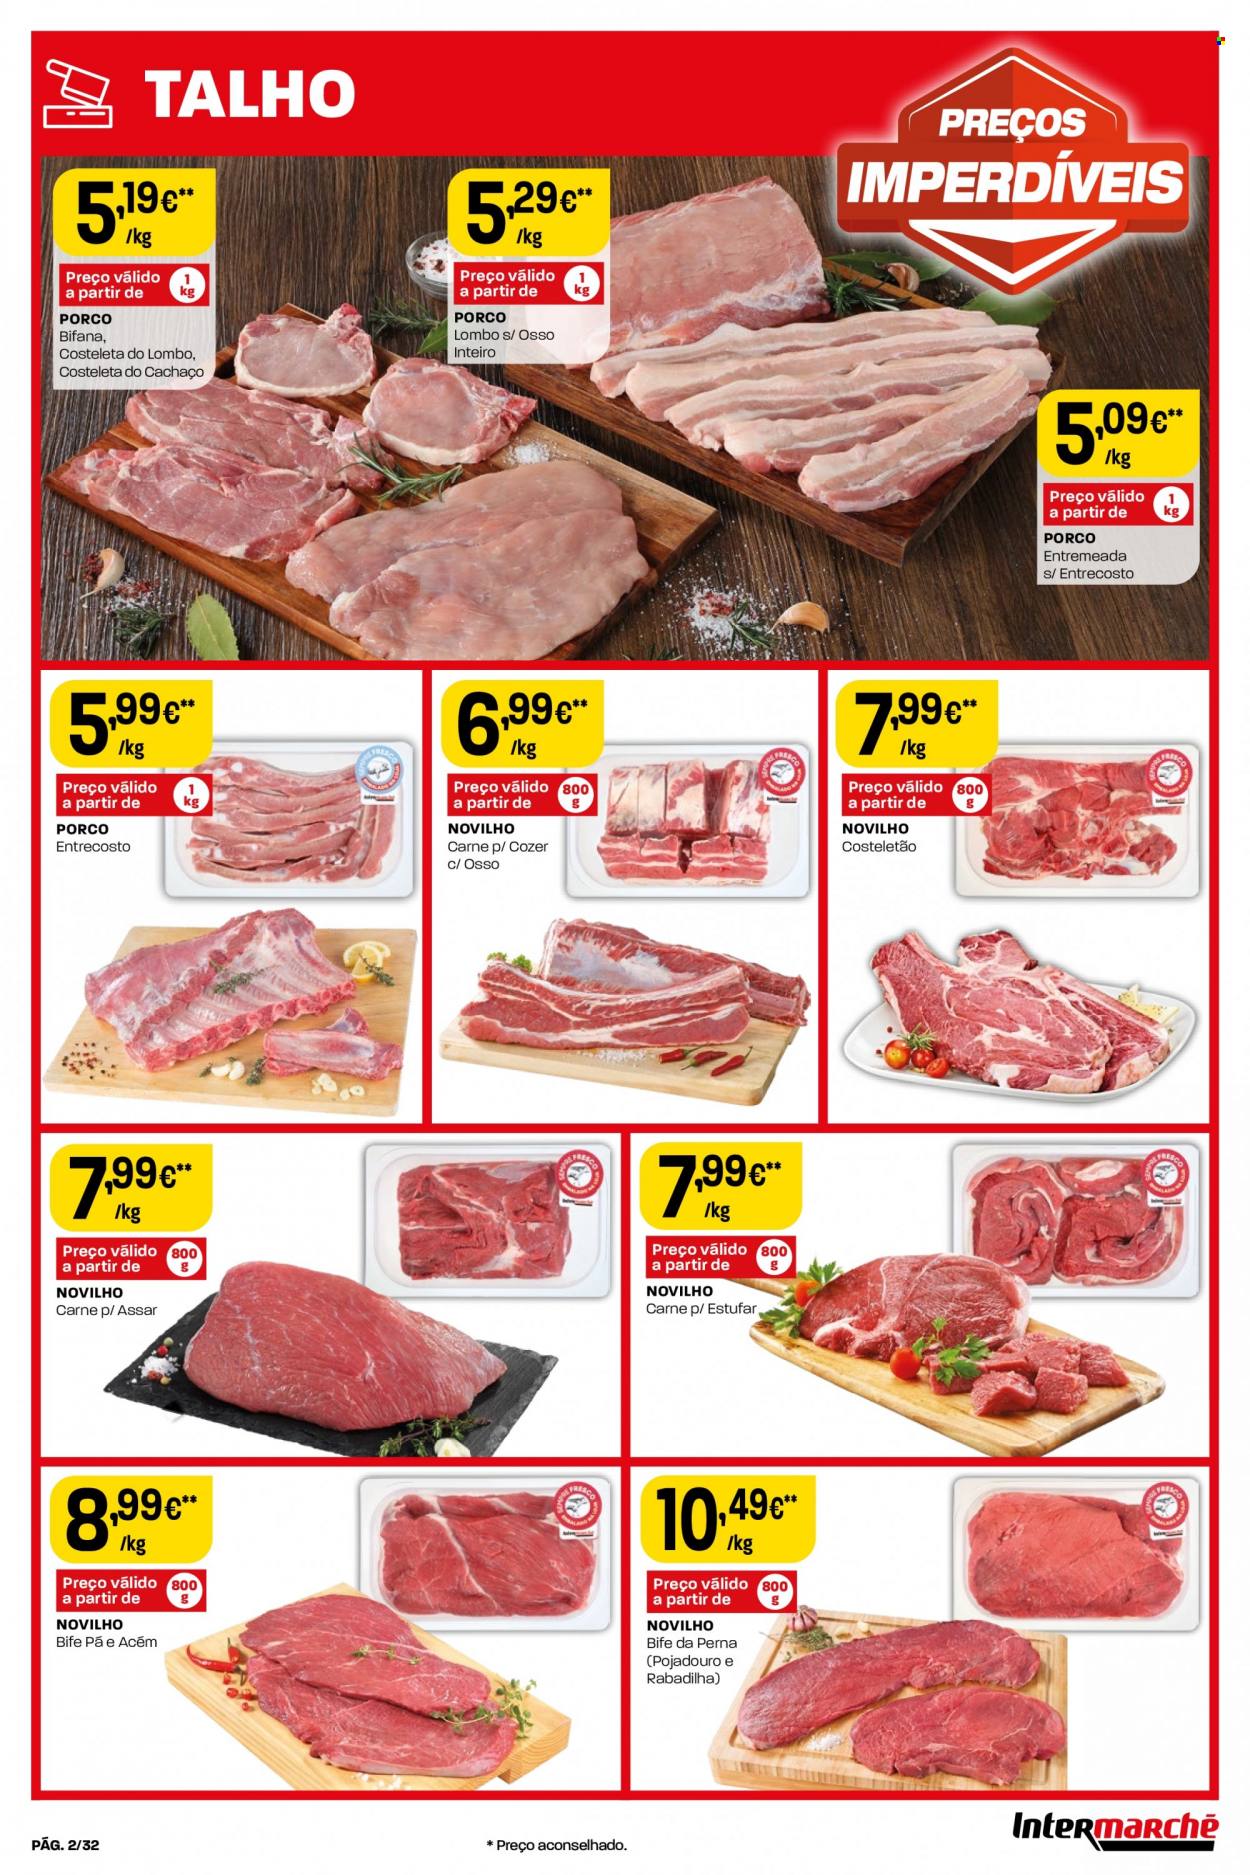 thumbnail - Folheto Intermarché - 30.3.2023 - 5.4.2023 - Produtos em promoção - bife, lombo, carne, carne de novilho. Página 2.